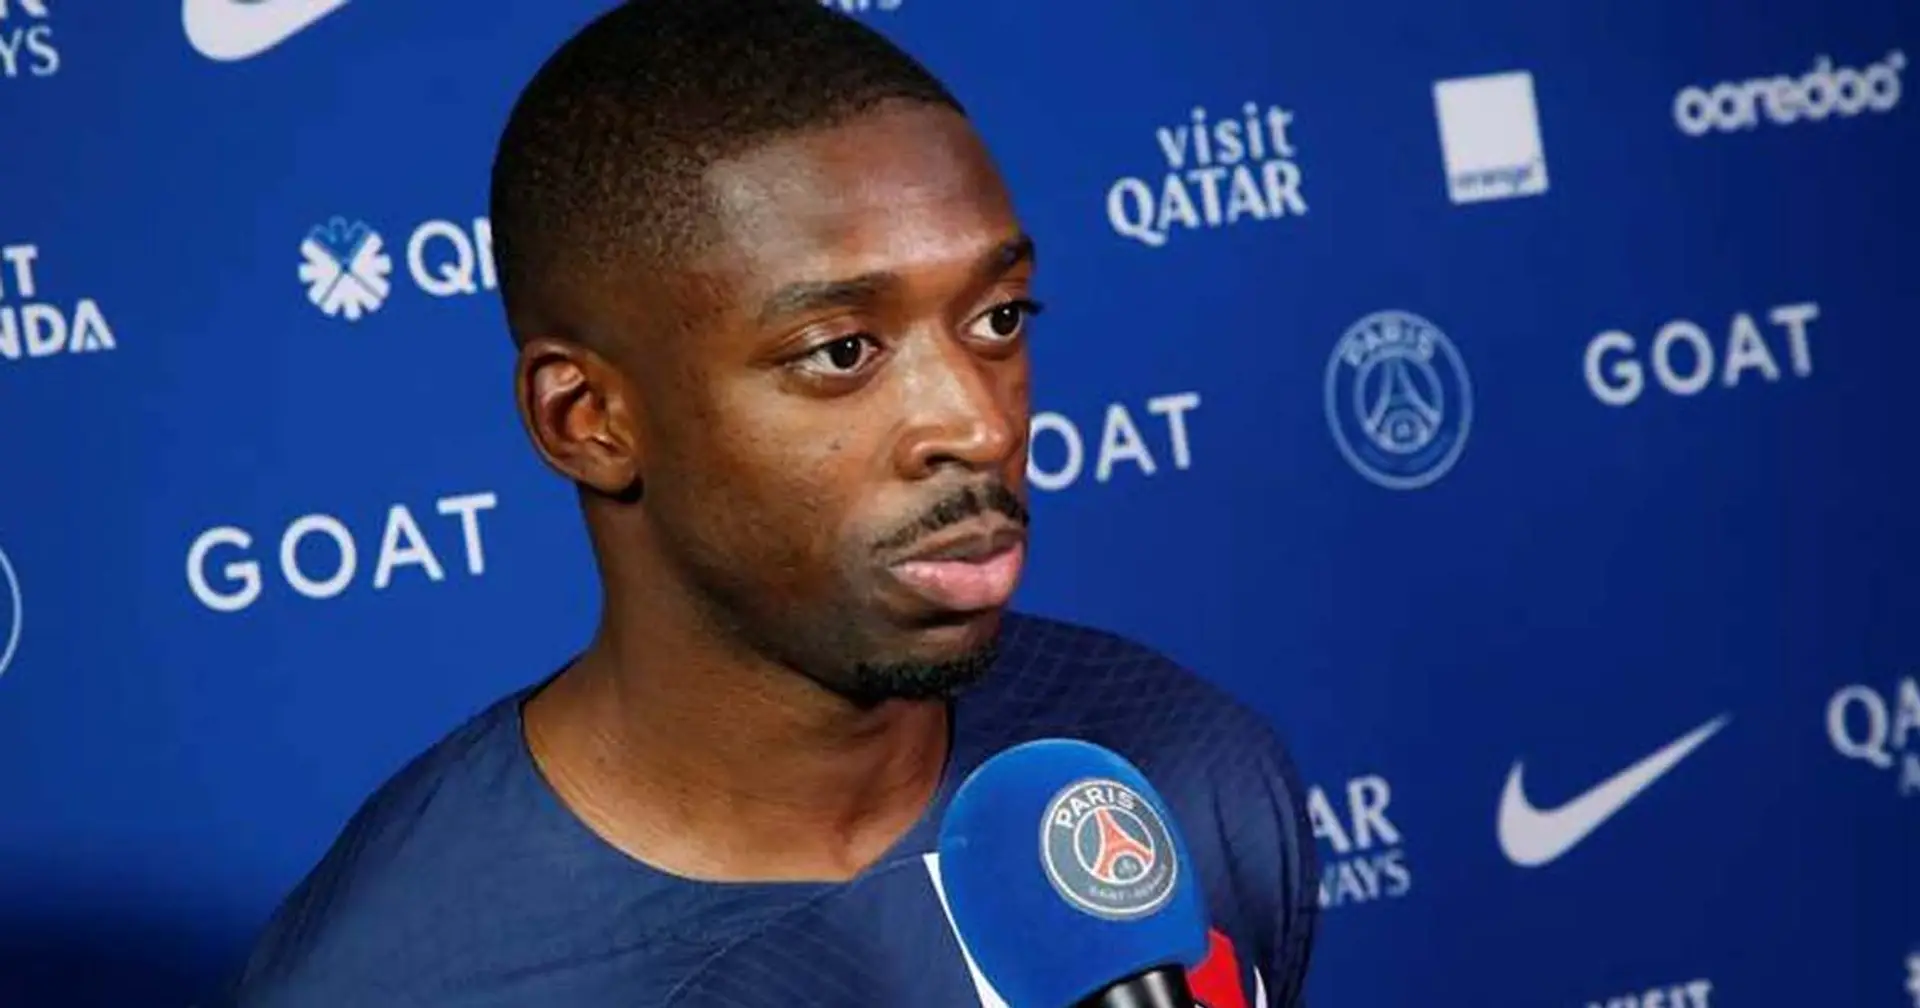 "On doit se remettre en question", les mots forts d'Ousmane Dembele après la défaite du PSG vs Toulouse